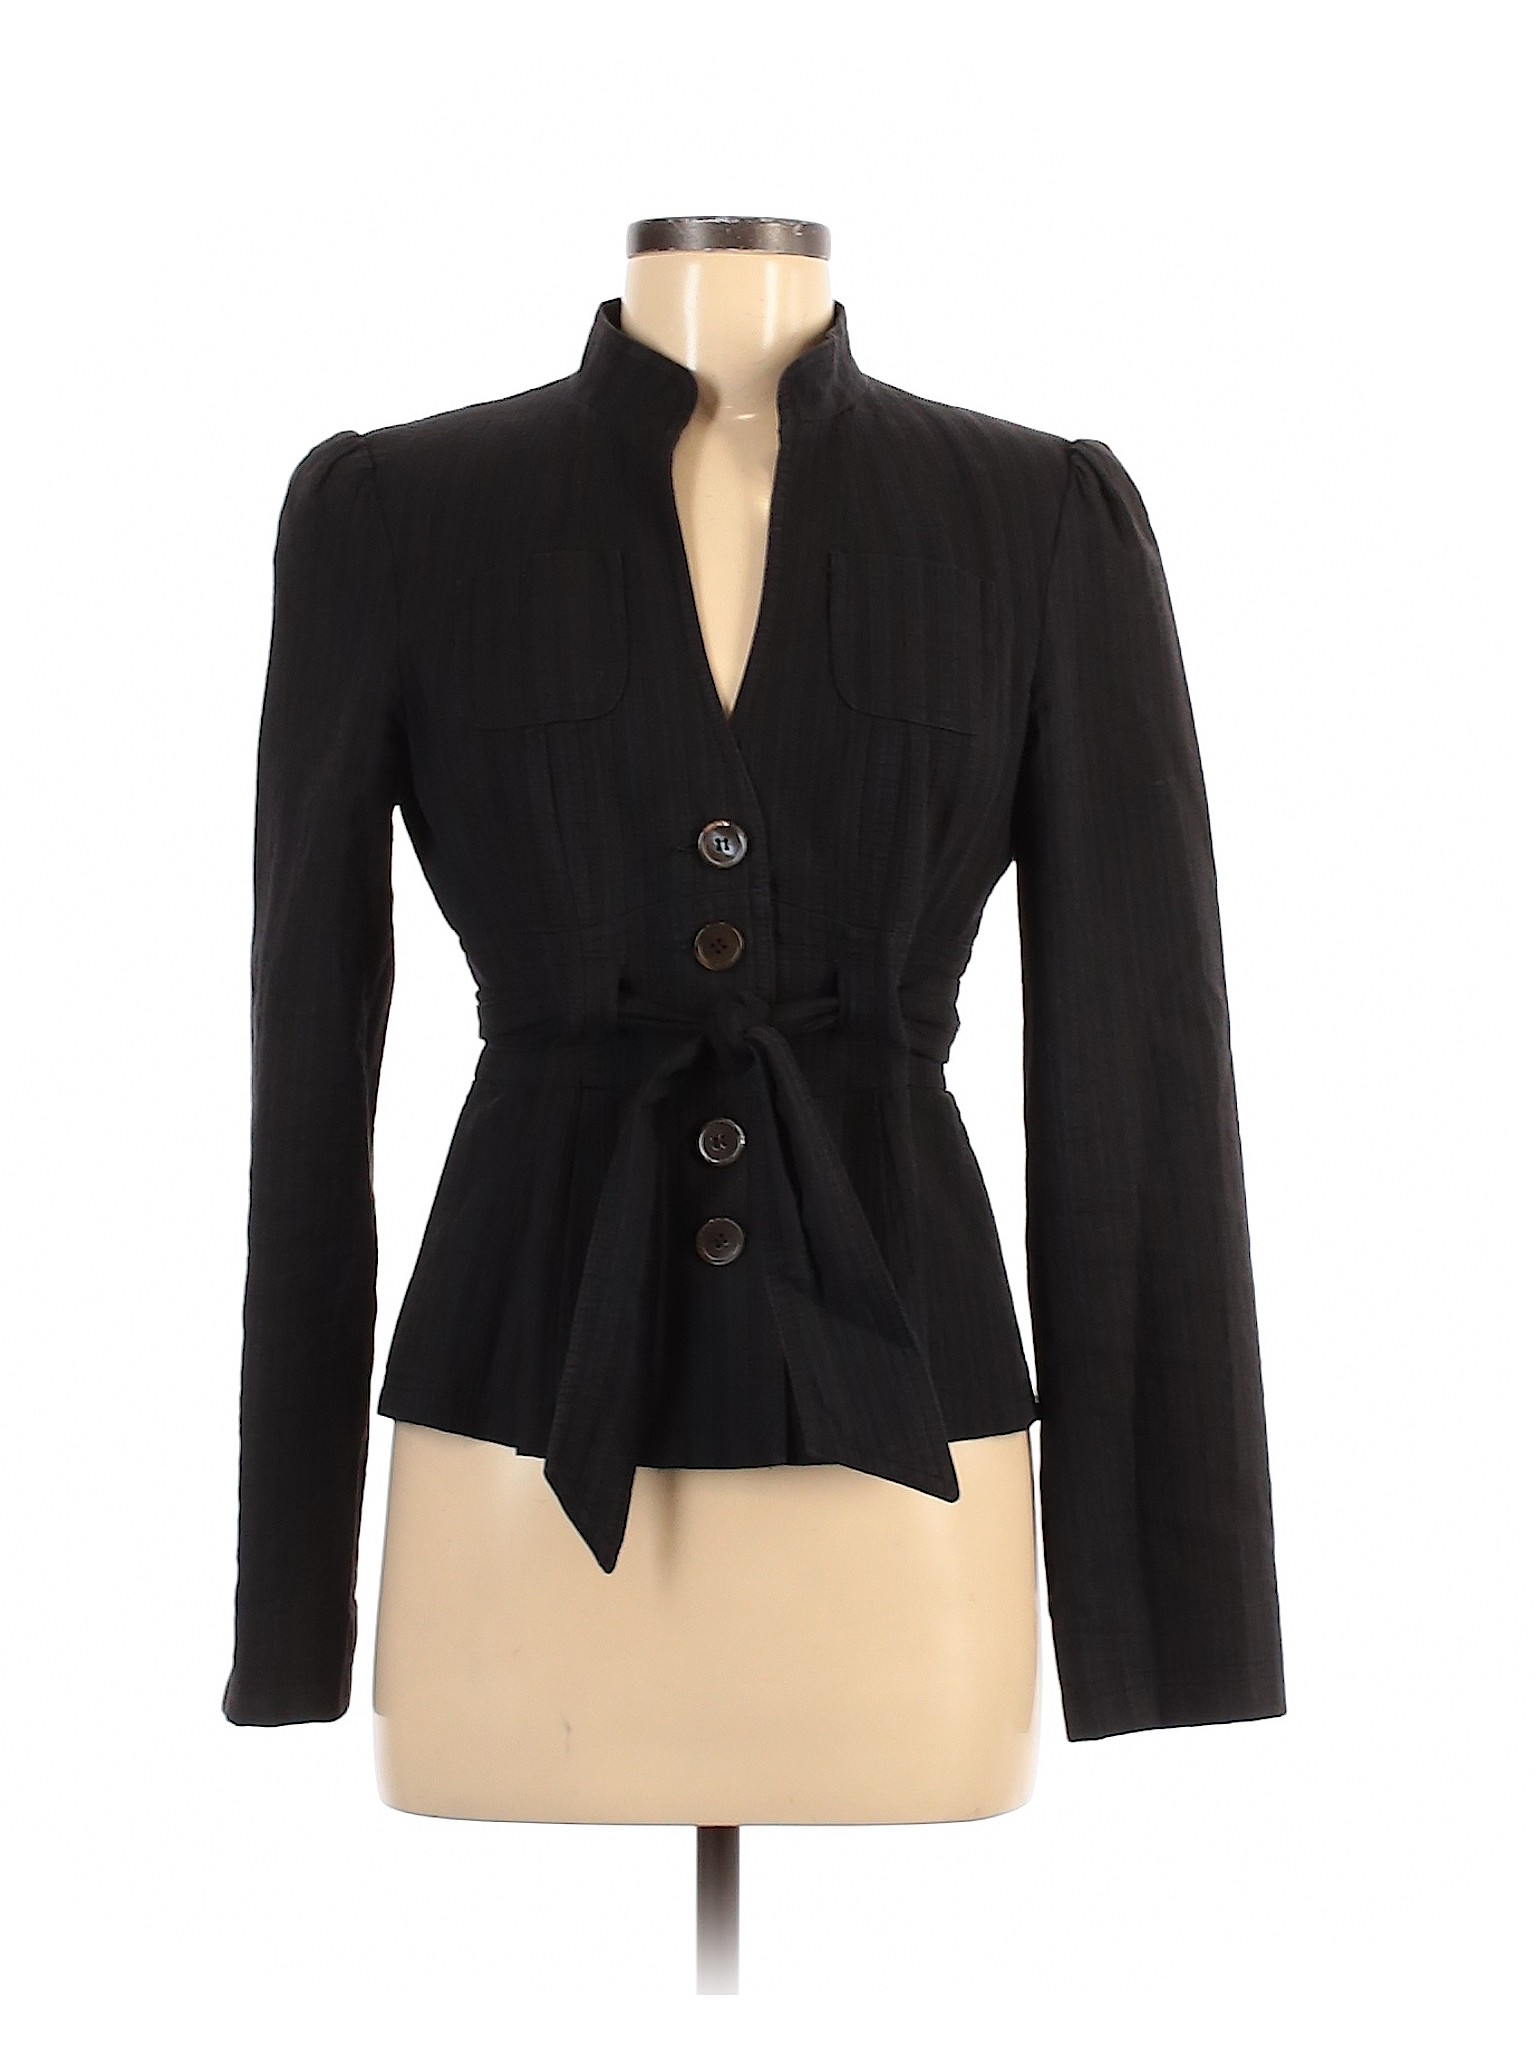 Nanette Lepore Women Black Jacket 8 | eBay